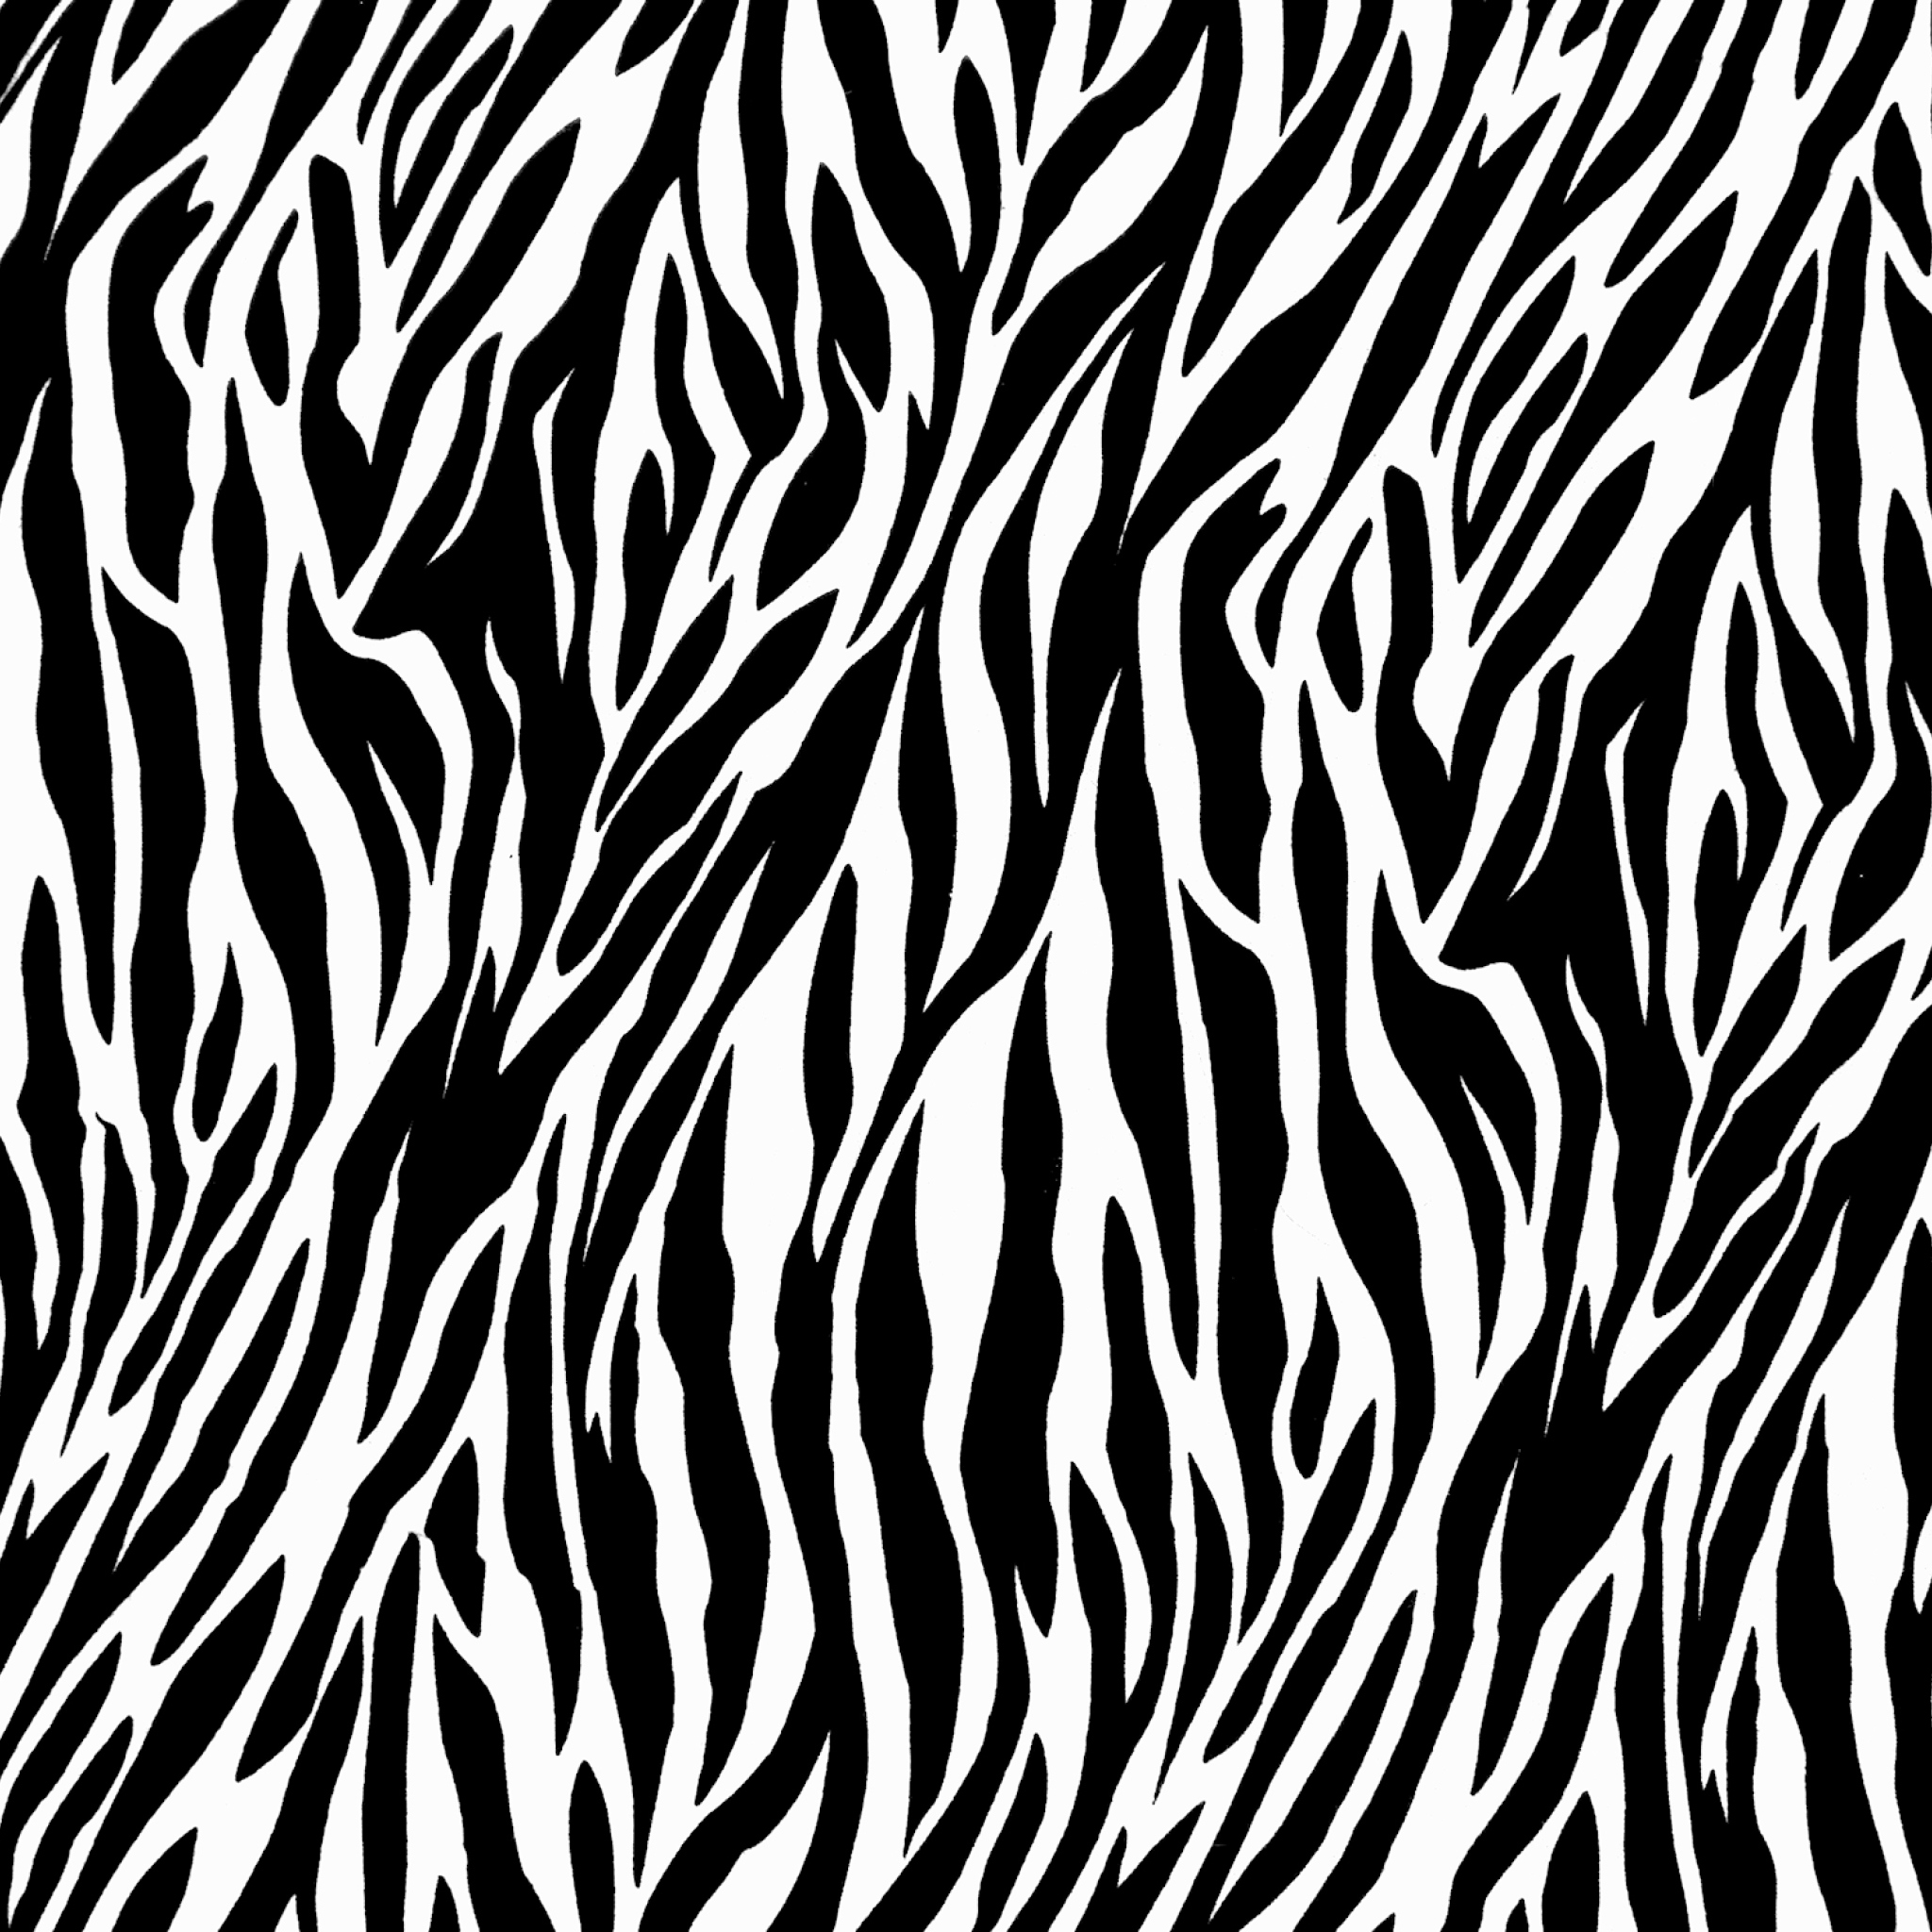 clip art zebra print - photo #4